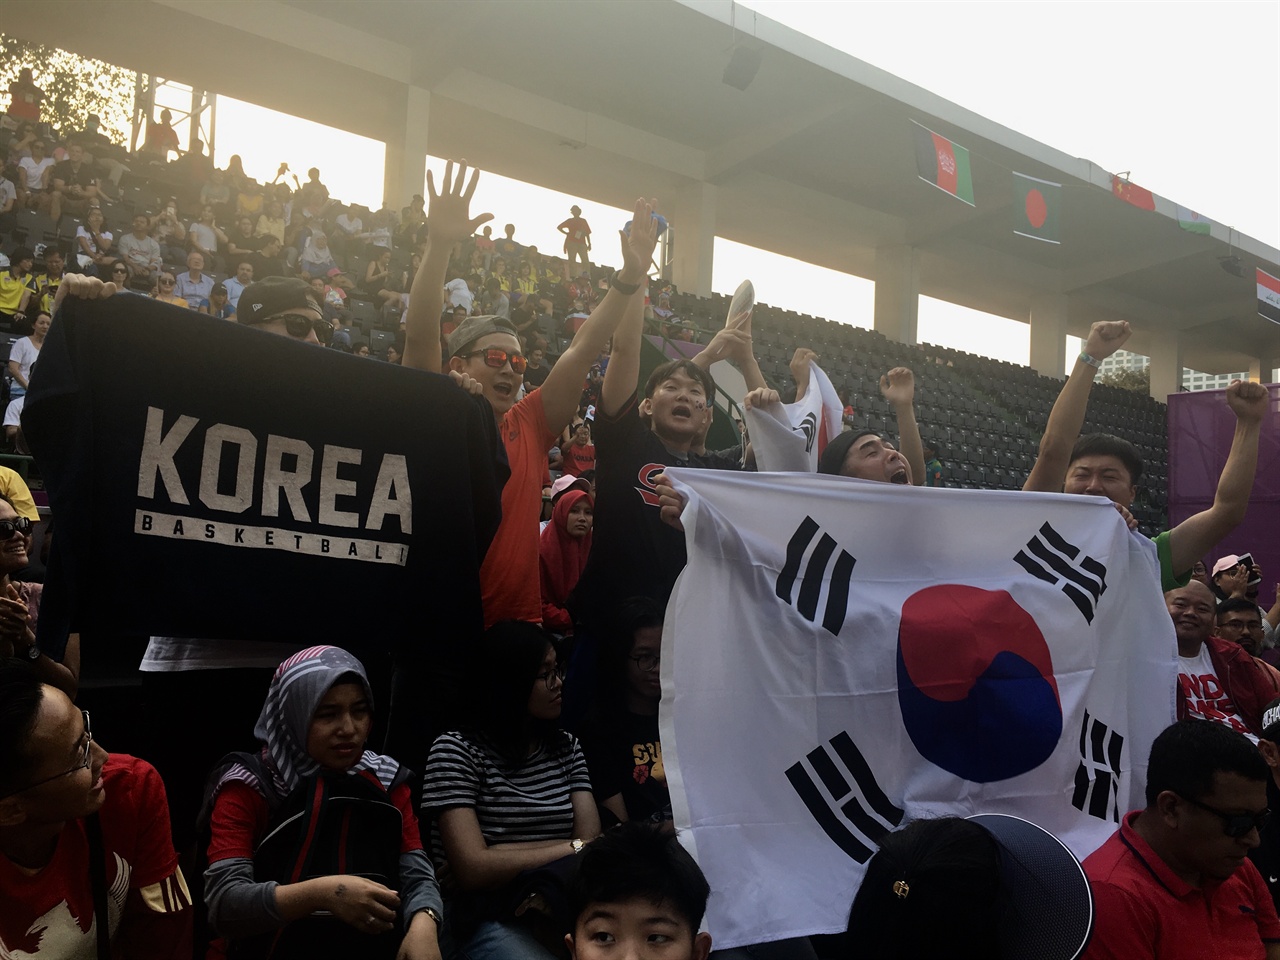  겔로라 붕 카르노(GBK) 3X3 농구장에서 대한민국을 응원하는 한국인의 모습이다.